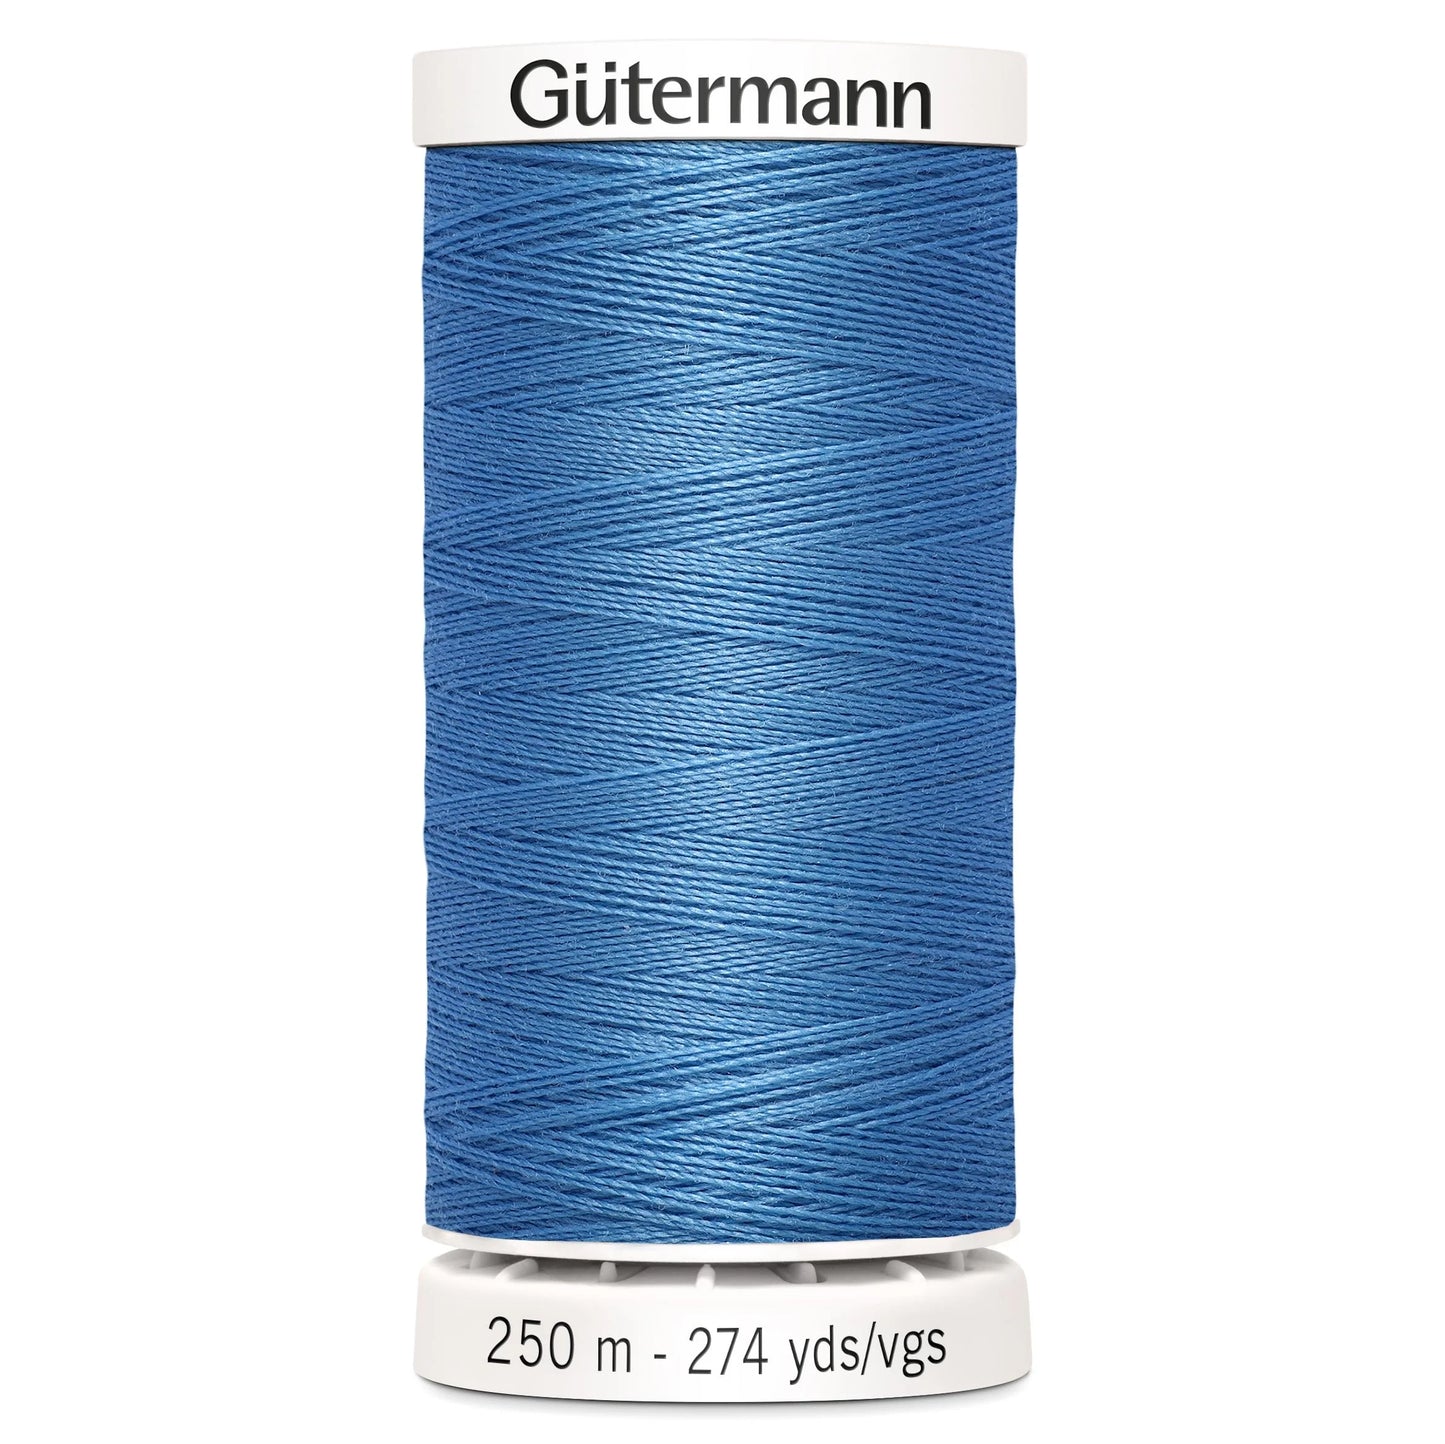 965 Gutermann Sew All 250m - Washed Denim